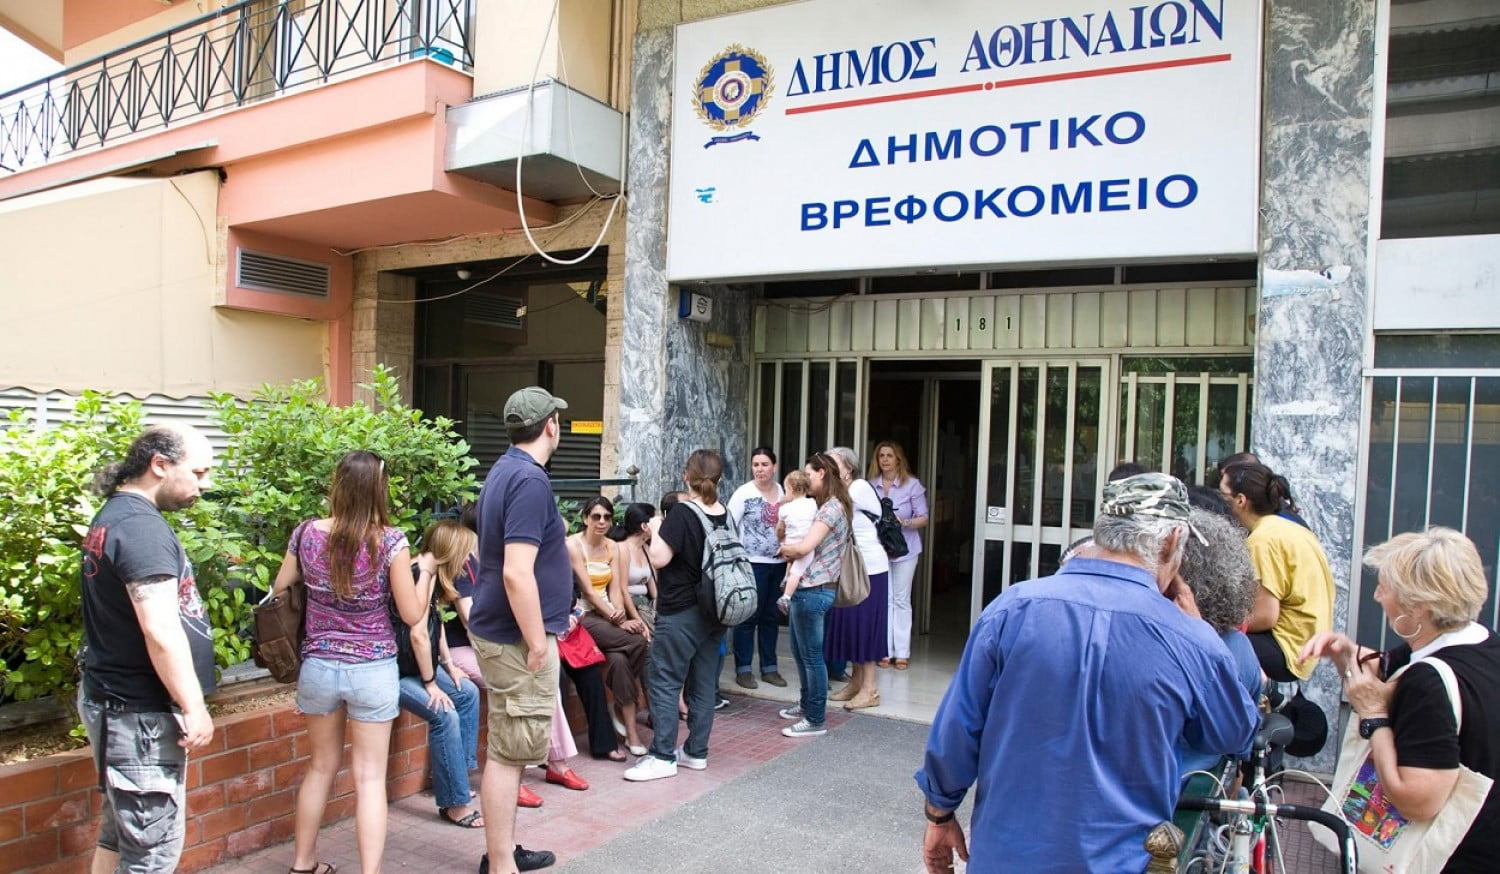 20 προσλήψεις στο Δημοτικό Βρεφοκομείο Αθηνών